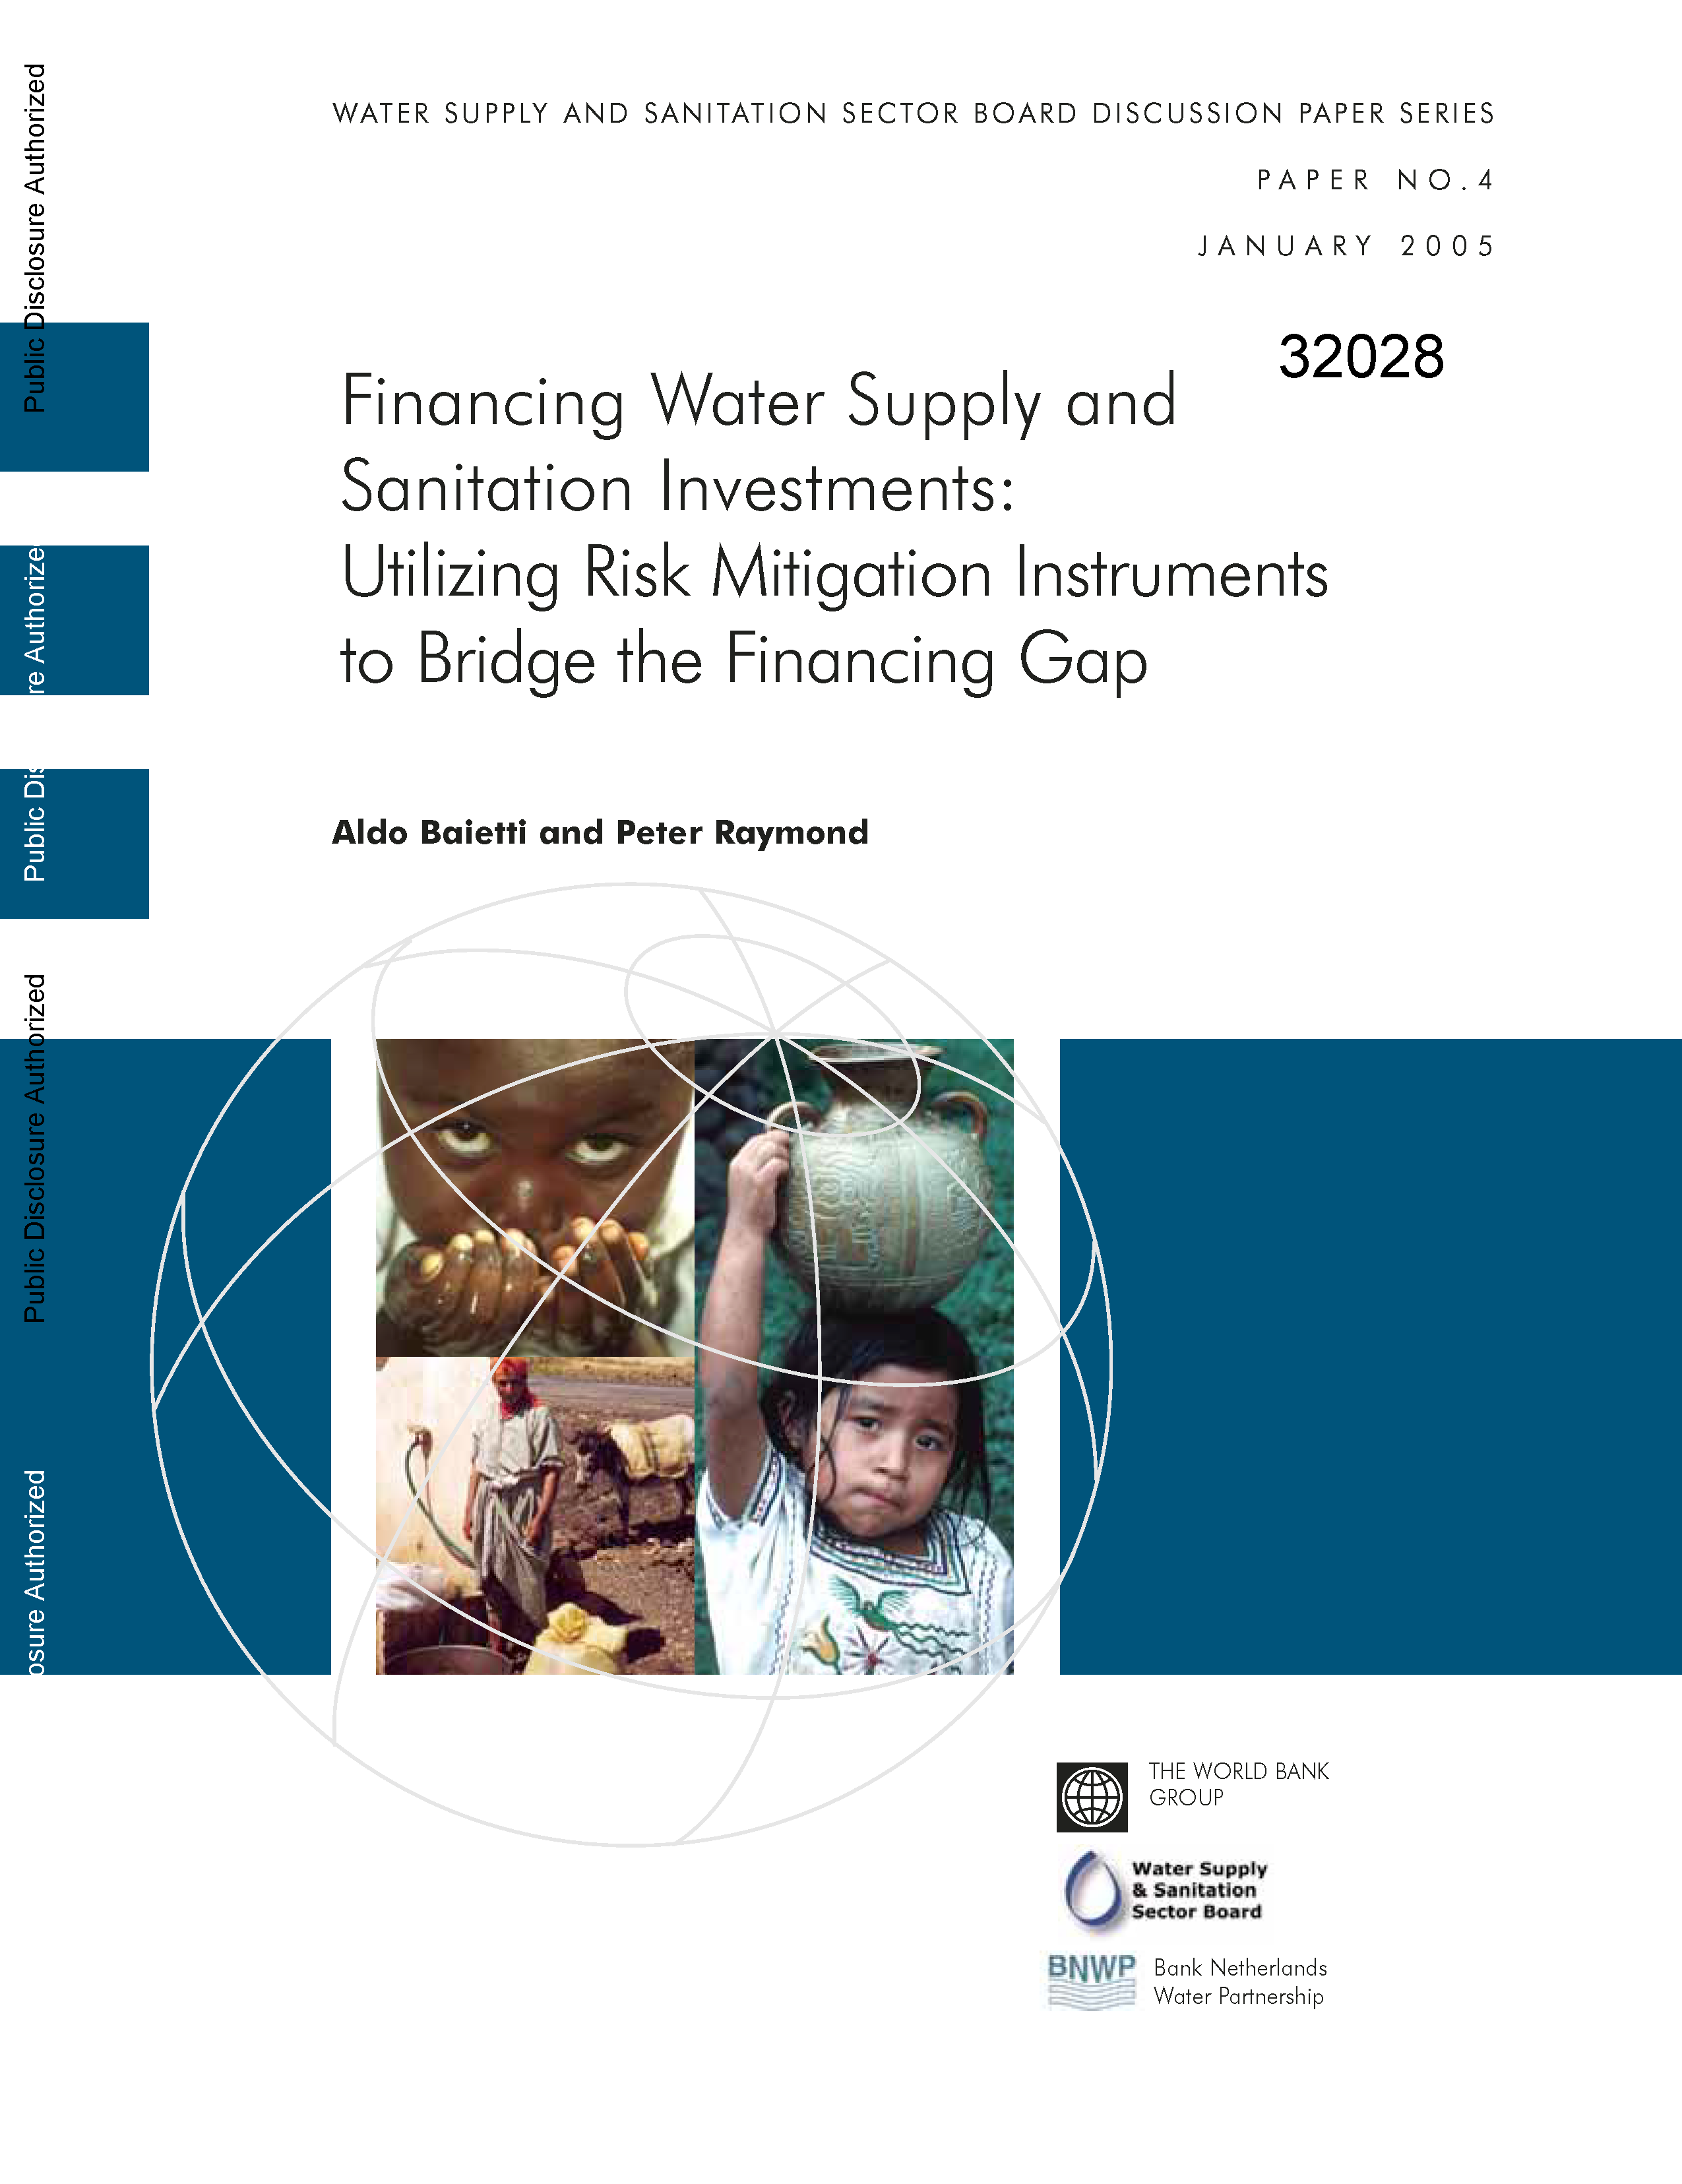 Page de couverture de Financement des investissements dans l'approvisionnement en eau et l'assainissement : utilisation d'instruments d'atténuation des risques pour combler le déficit de financement